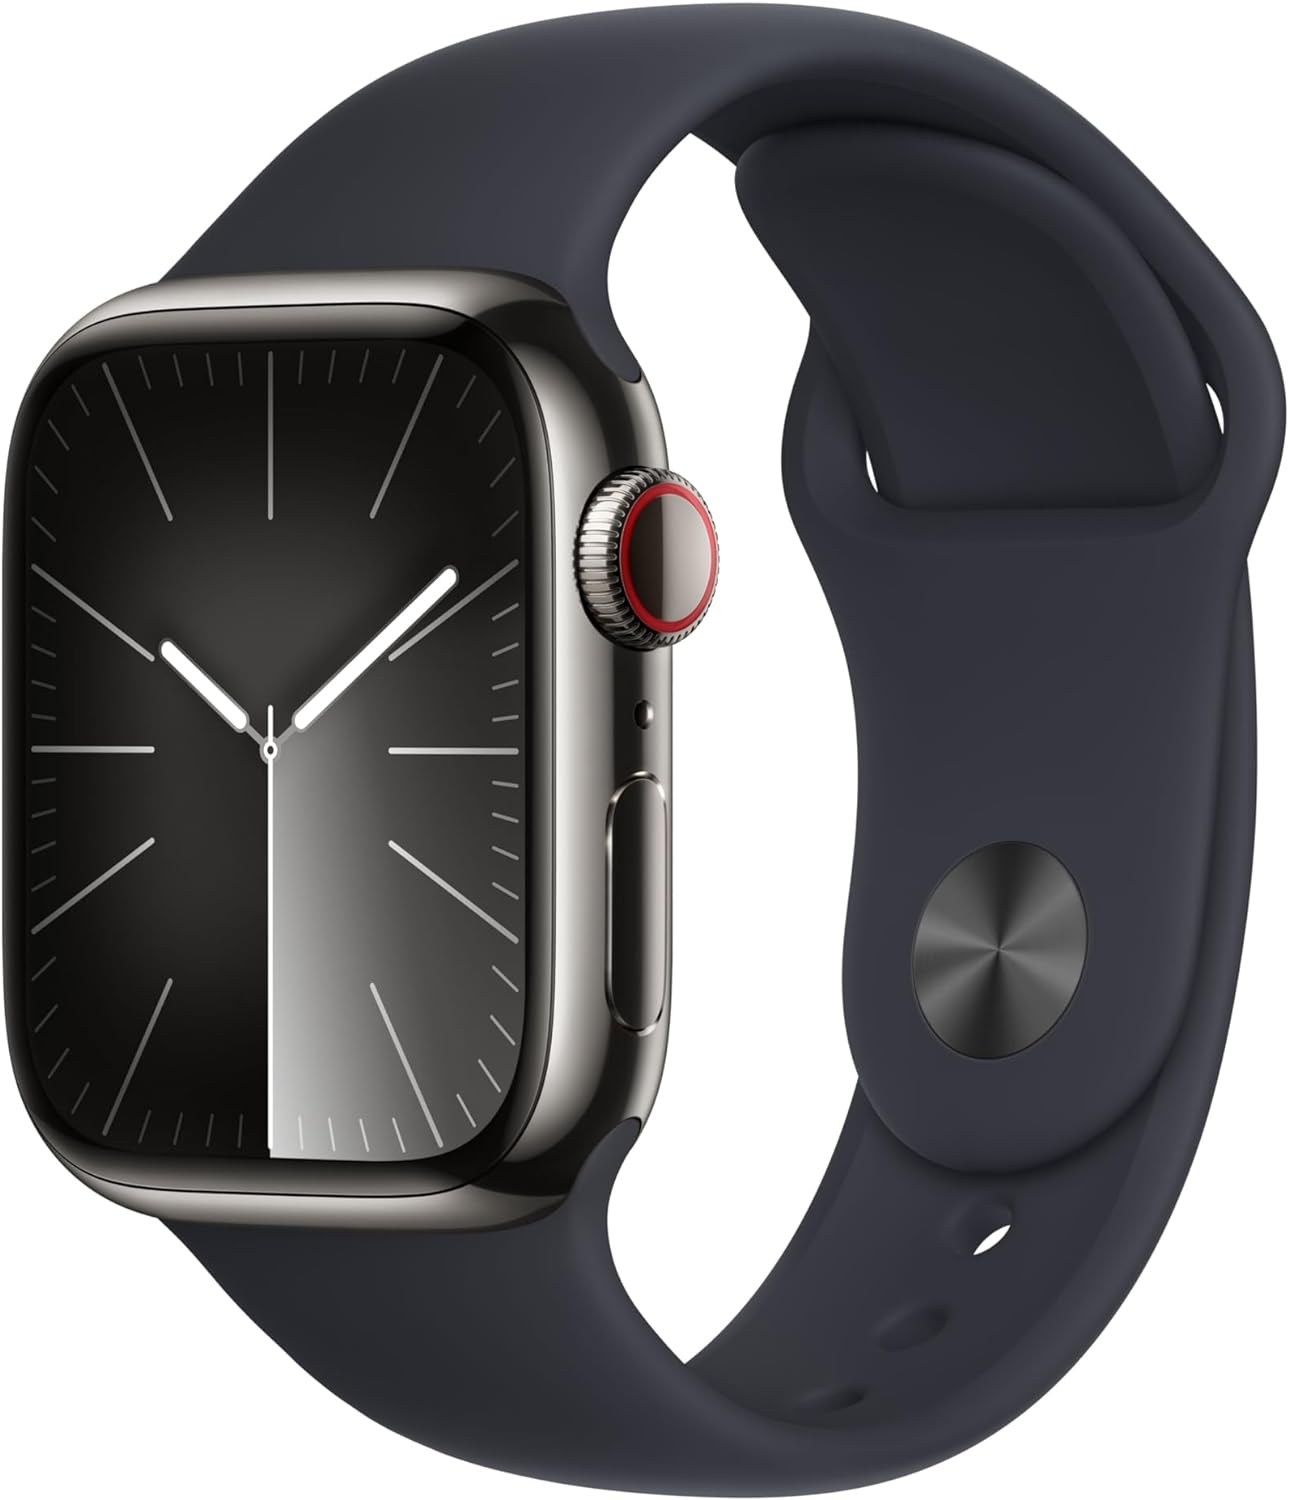 Apple Watch 9 vs Garmin Fenix 7